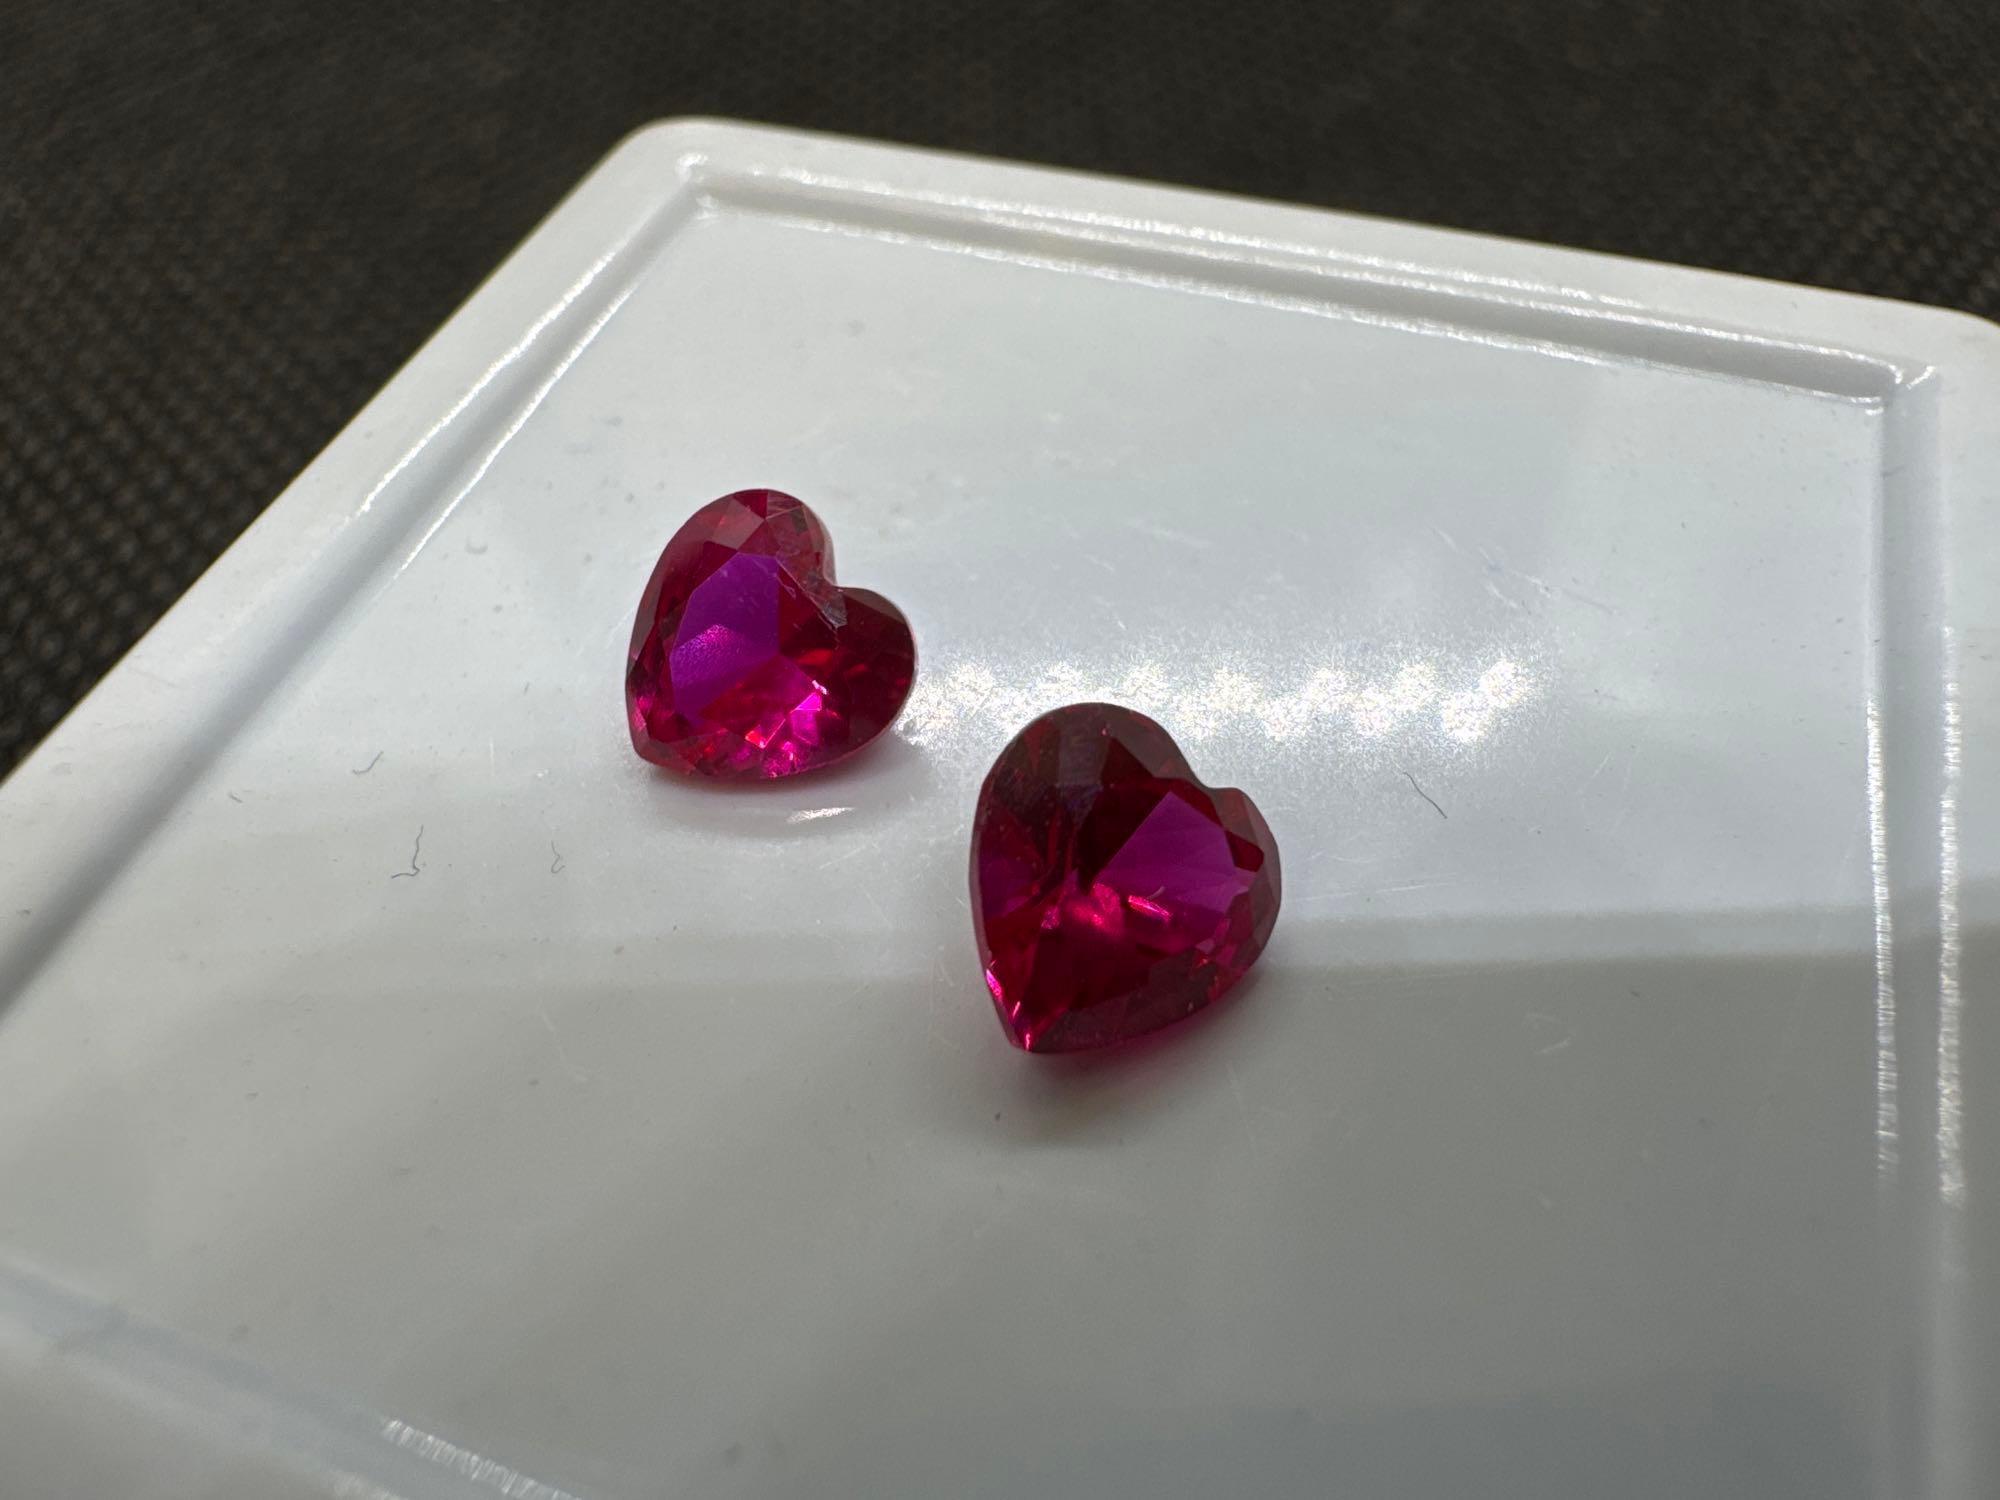 Pair Of Red Heart Cut Ruby Gemstones 1.85 Ct